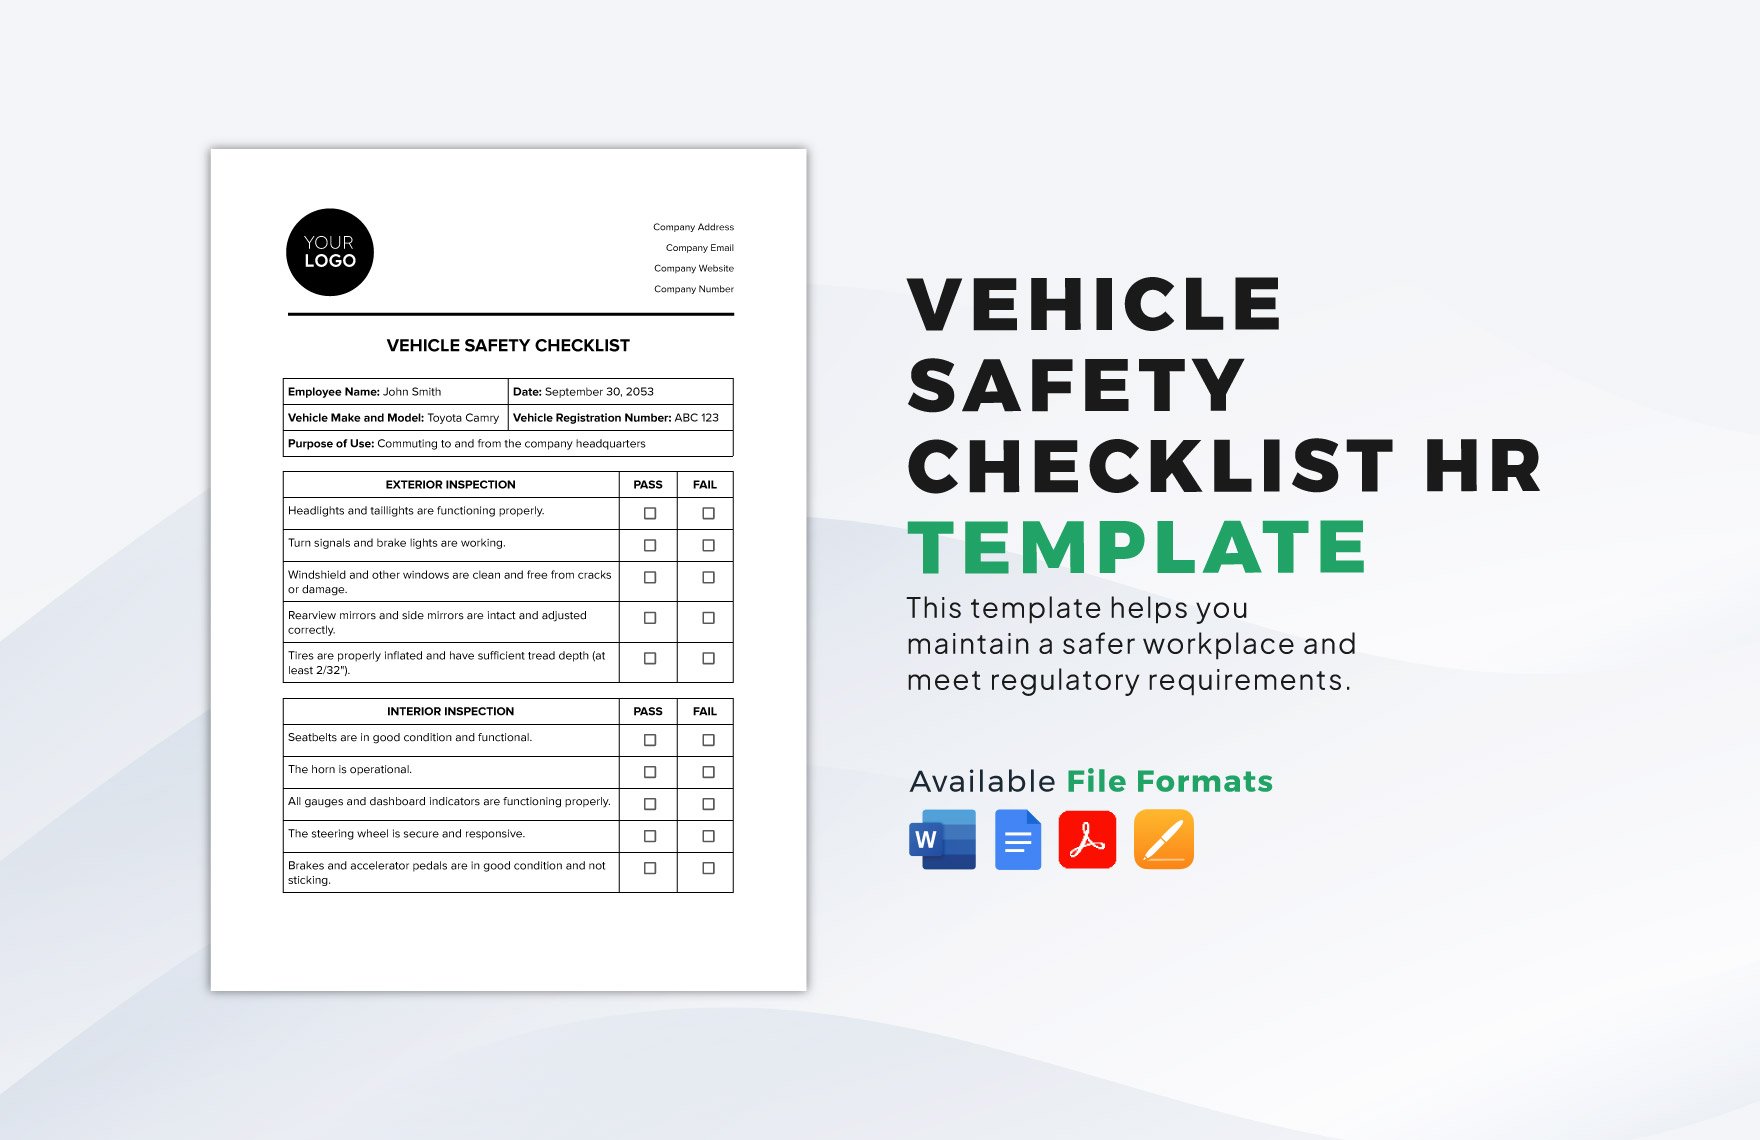 Vehicle Safety Checklist HR Template